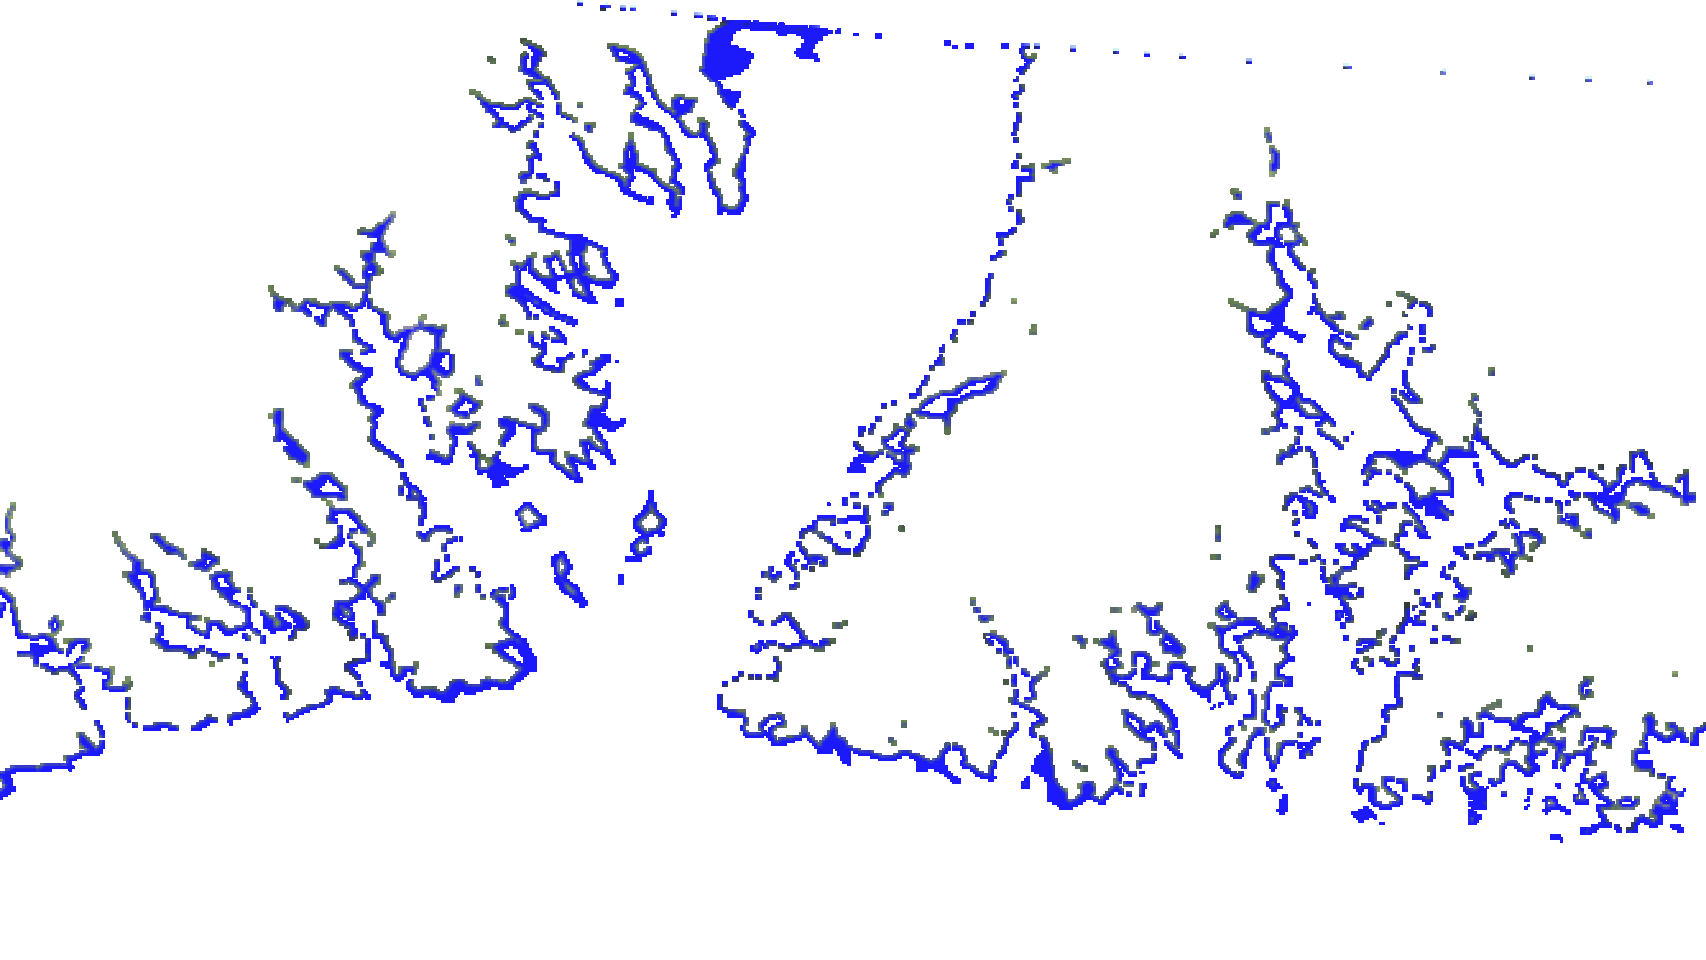 deshielo mississippi antartida groenlandia